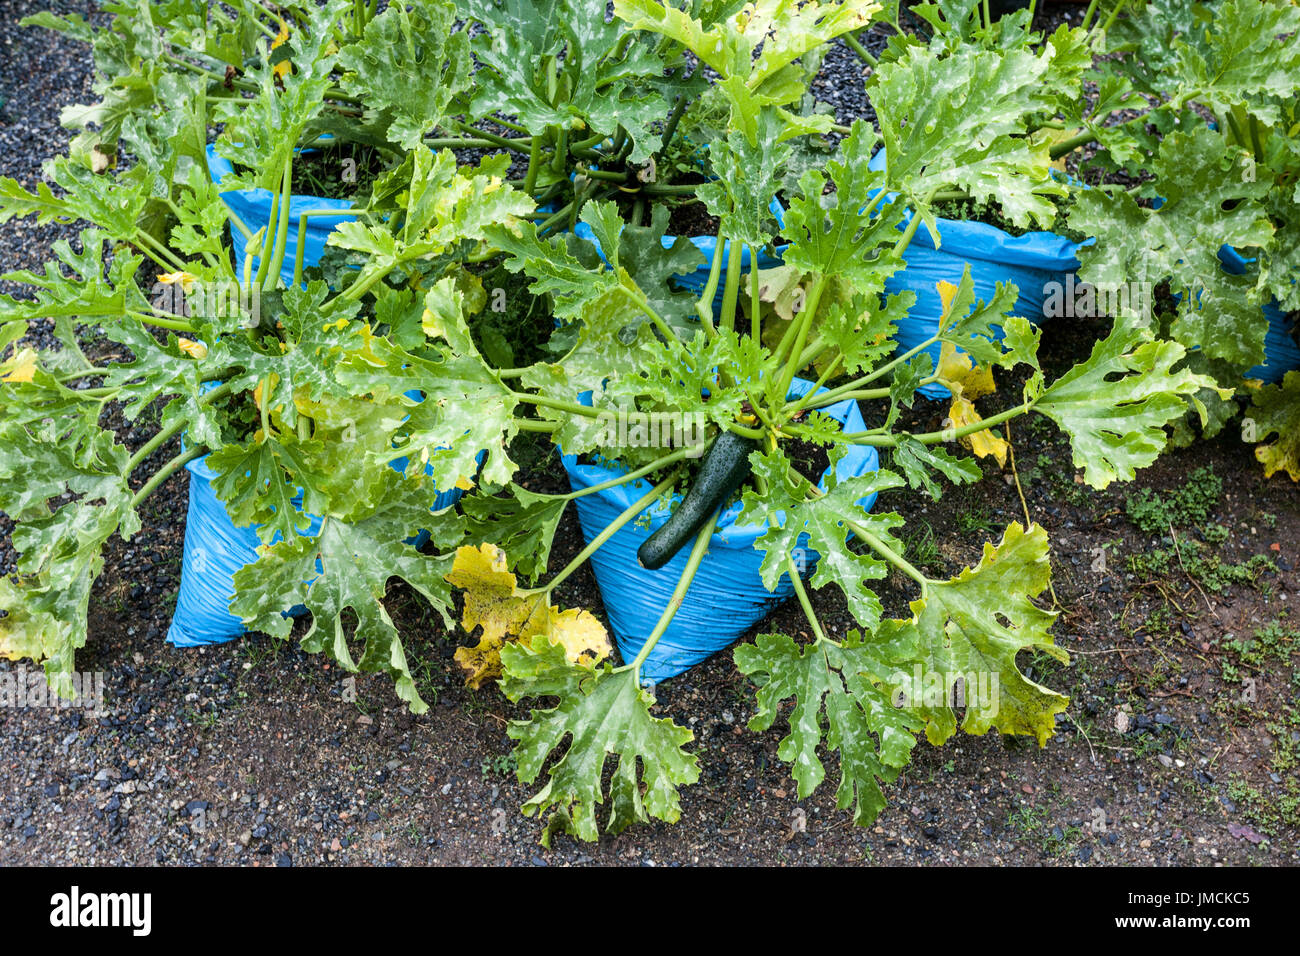 Reifende Zucchinipflanze wächst in Plastiktüten, Gemüsebeutelgarten Zucchini-Garten Pflanzen Pflanzen Säcke Zucchini Gemüse anbauen Stockfoto